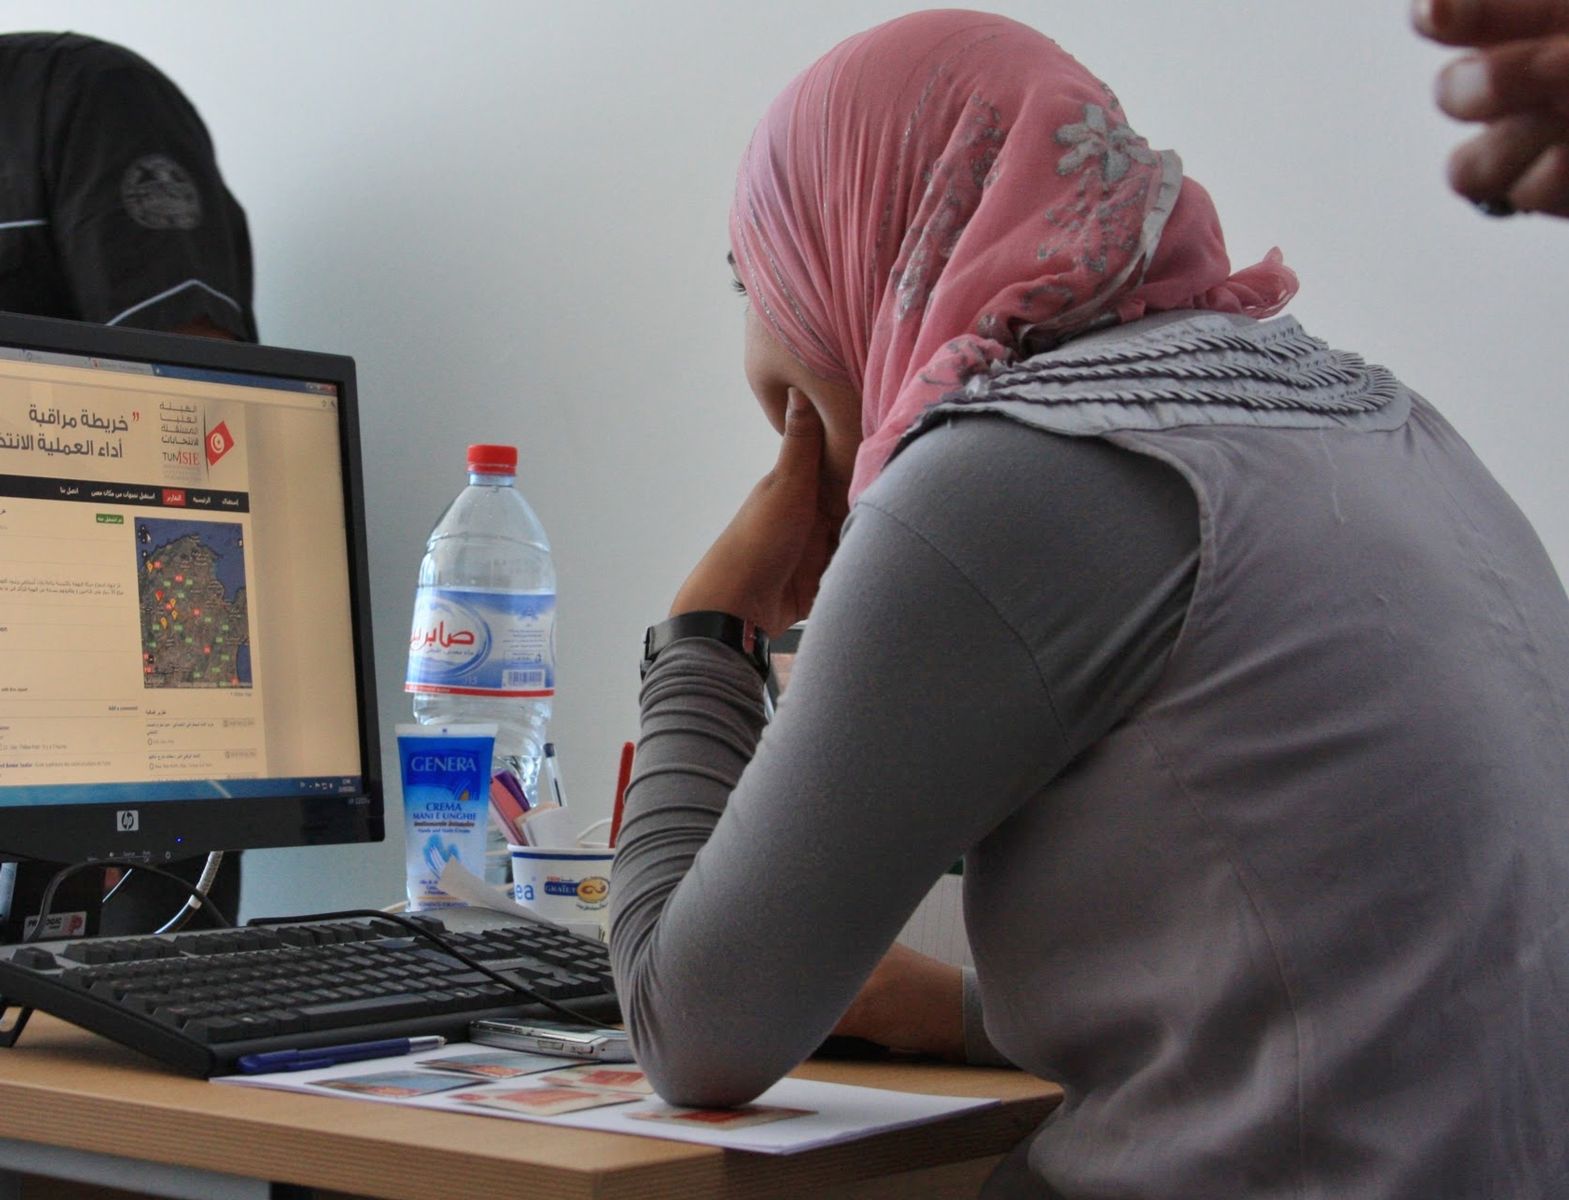 تشديد الأمان الإلكتروني وانتهاك حقوق الإنسان: قوانين مكافحة جرائم التقنية في الشرق الأوسط وشمال أفريقيا